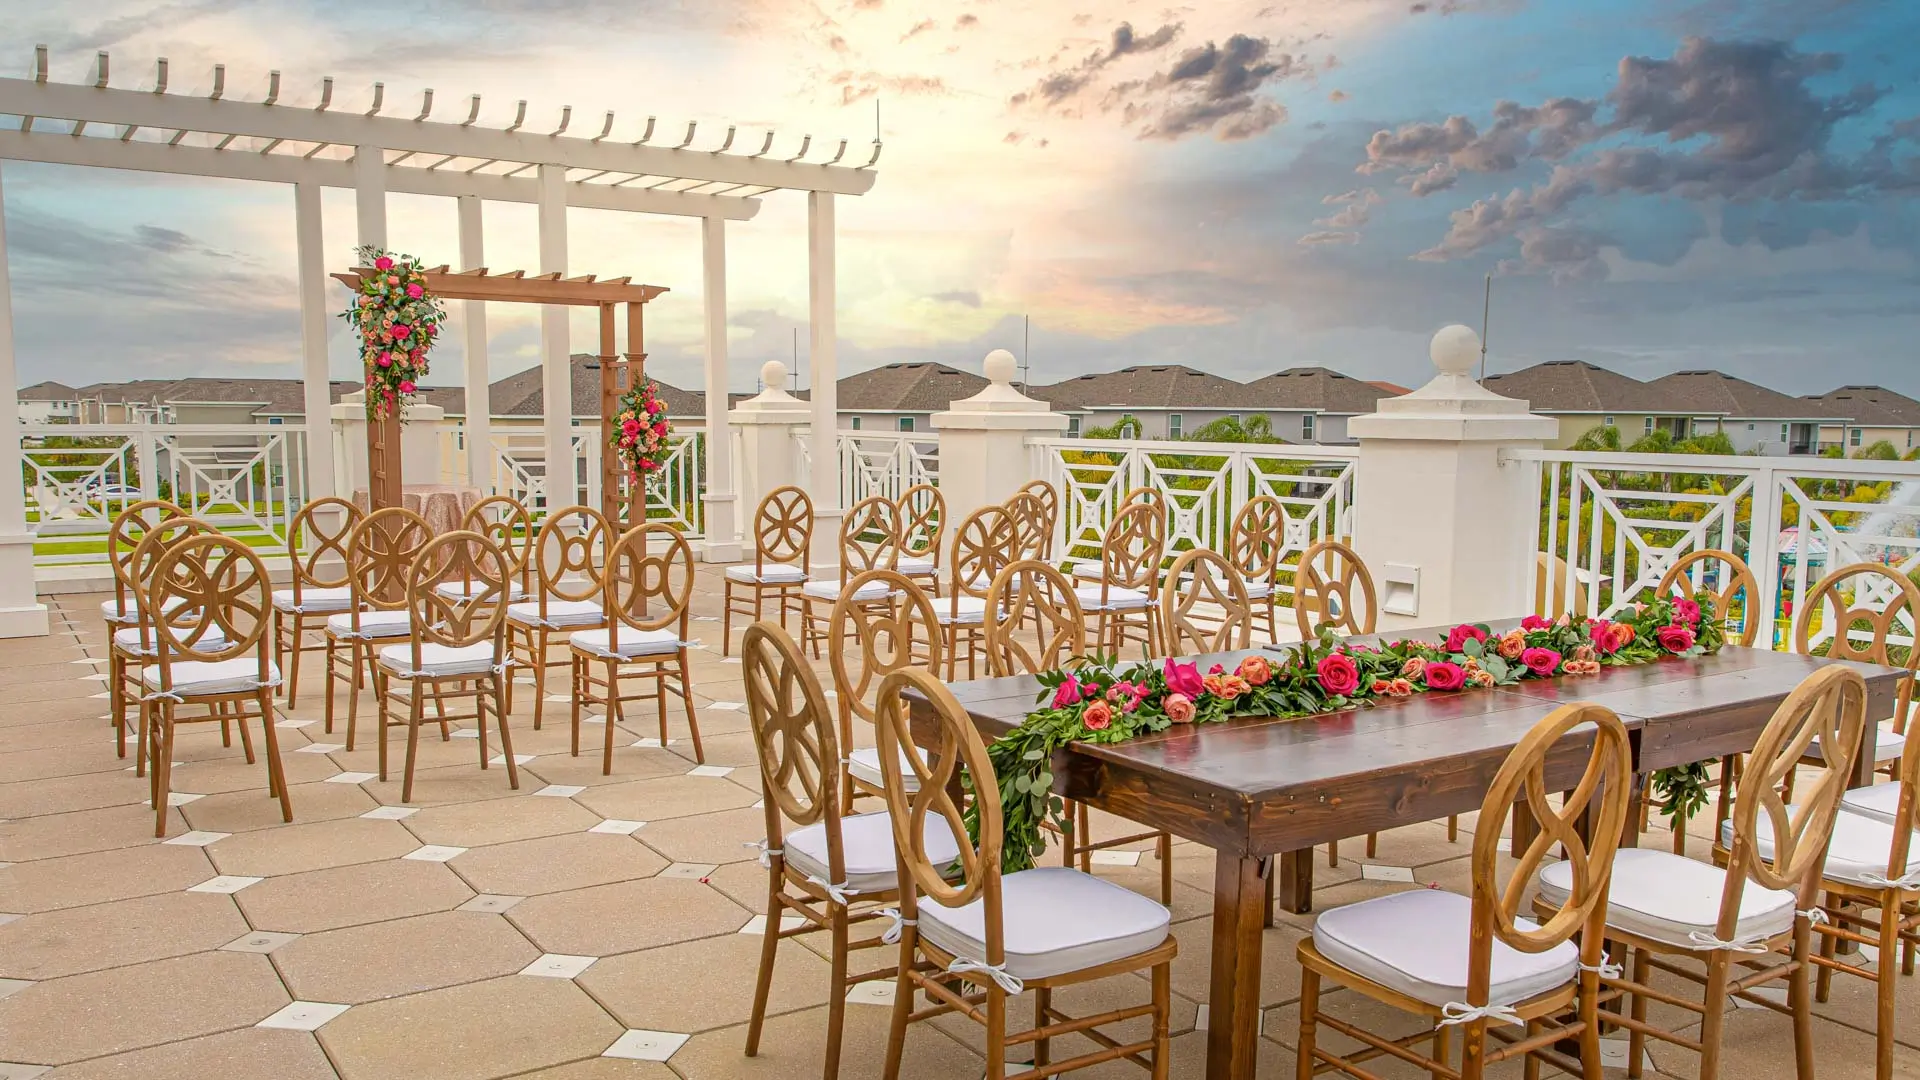 EncoreLa terraza de la casa club al aire libre está decorada para una boda al atardecer.